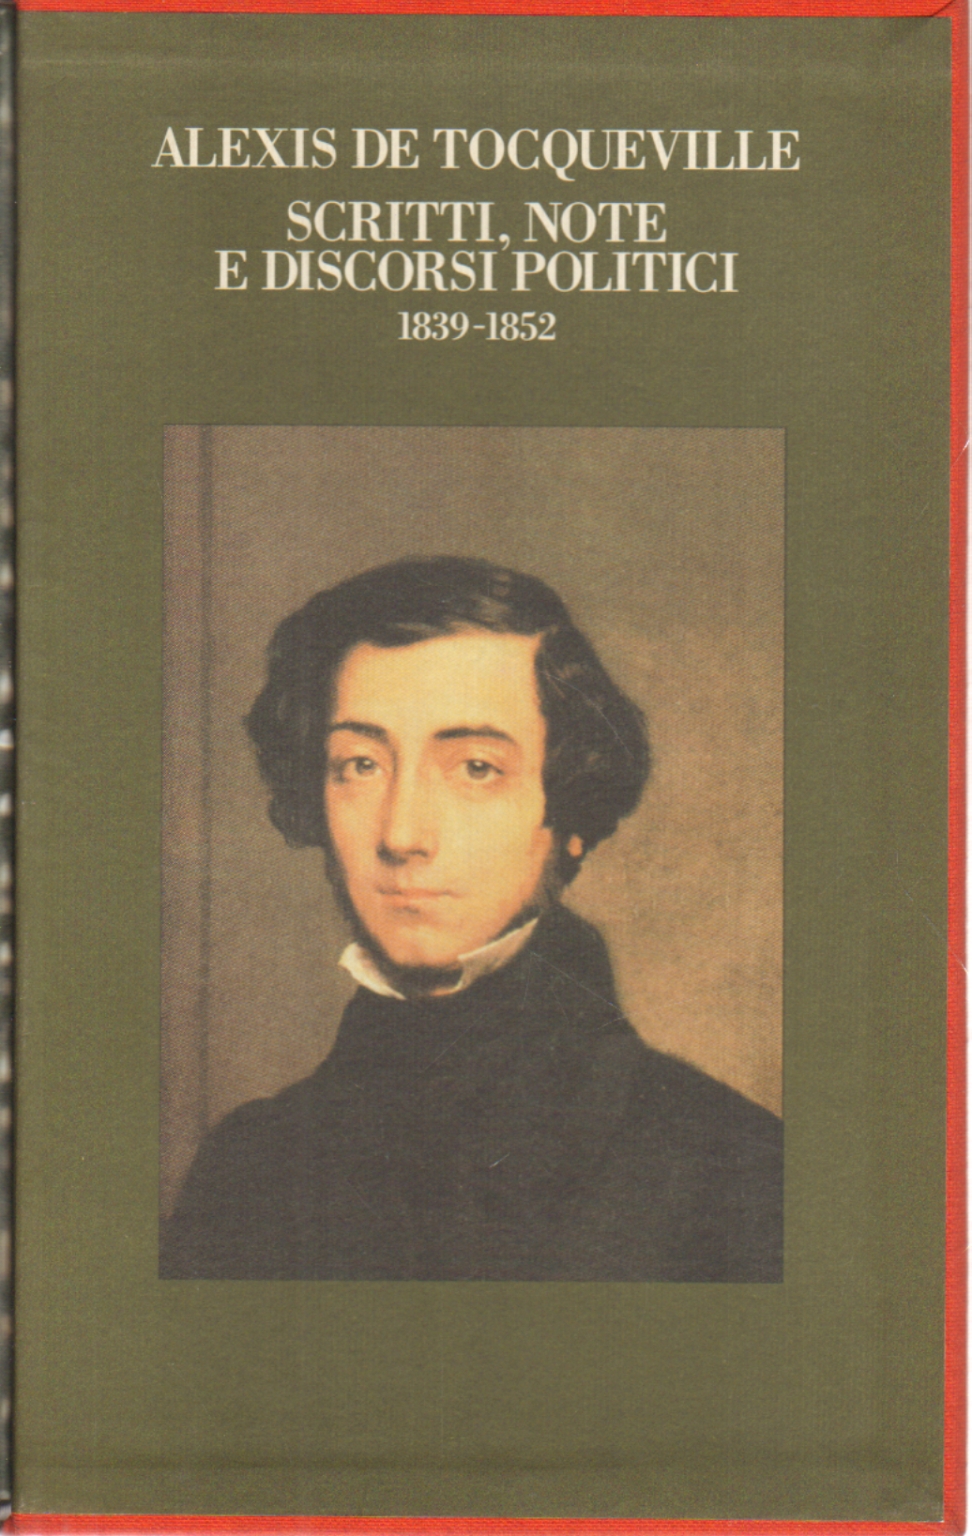 Scritti note e discorsi politici (1839-1852), Alexis De Tocqueville